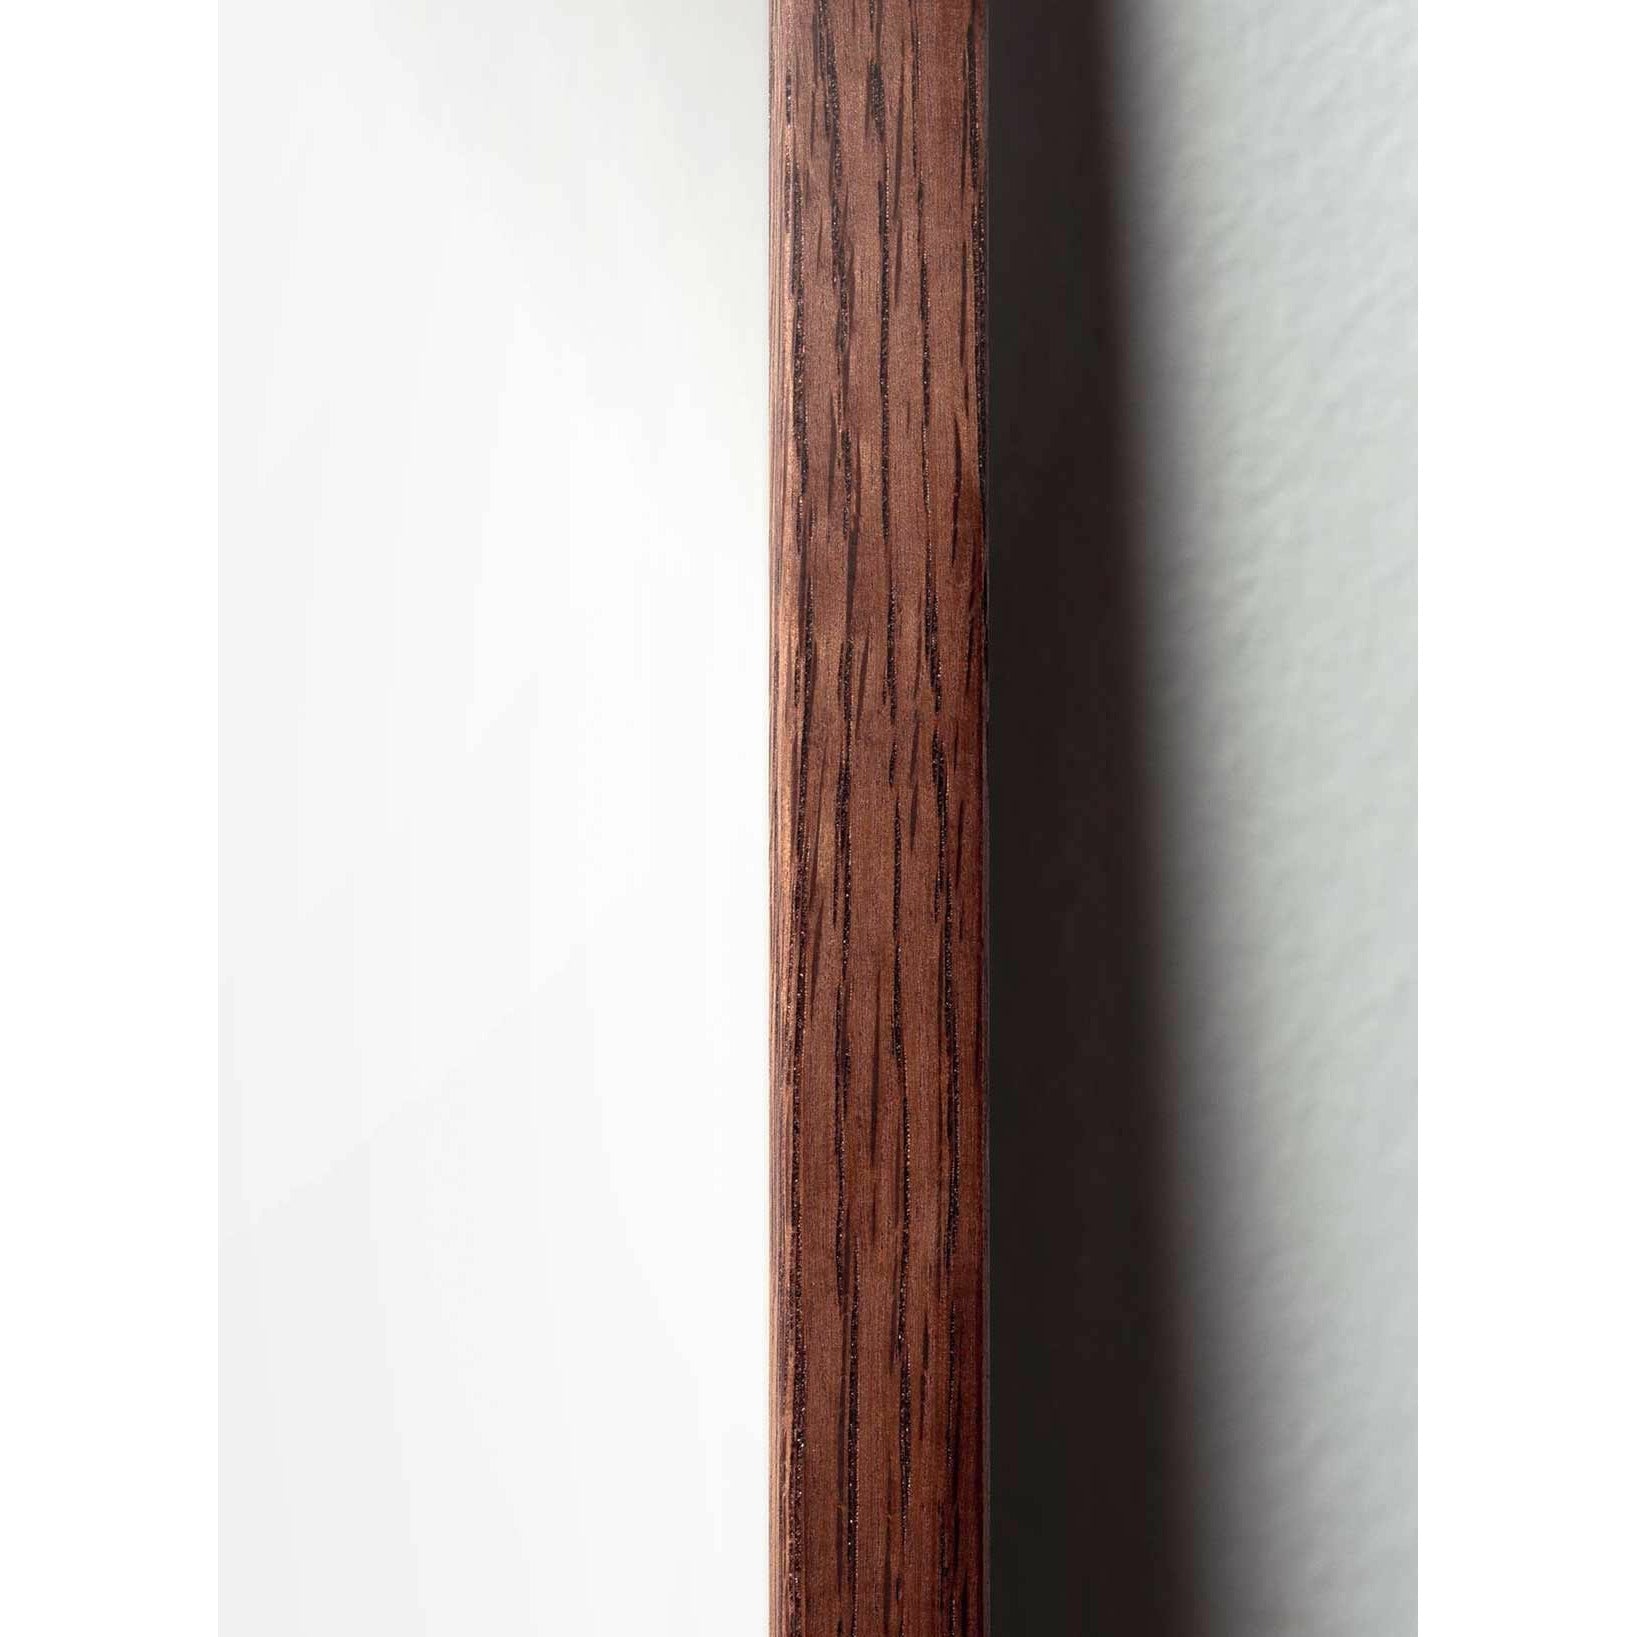 brainchild Munan ristimuodon juliste, tummapuusta valmistettu runko 30x40 cm, ruskea